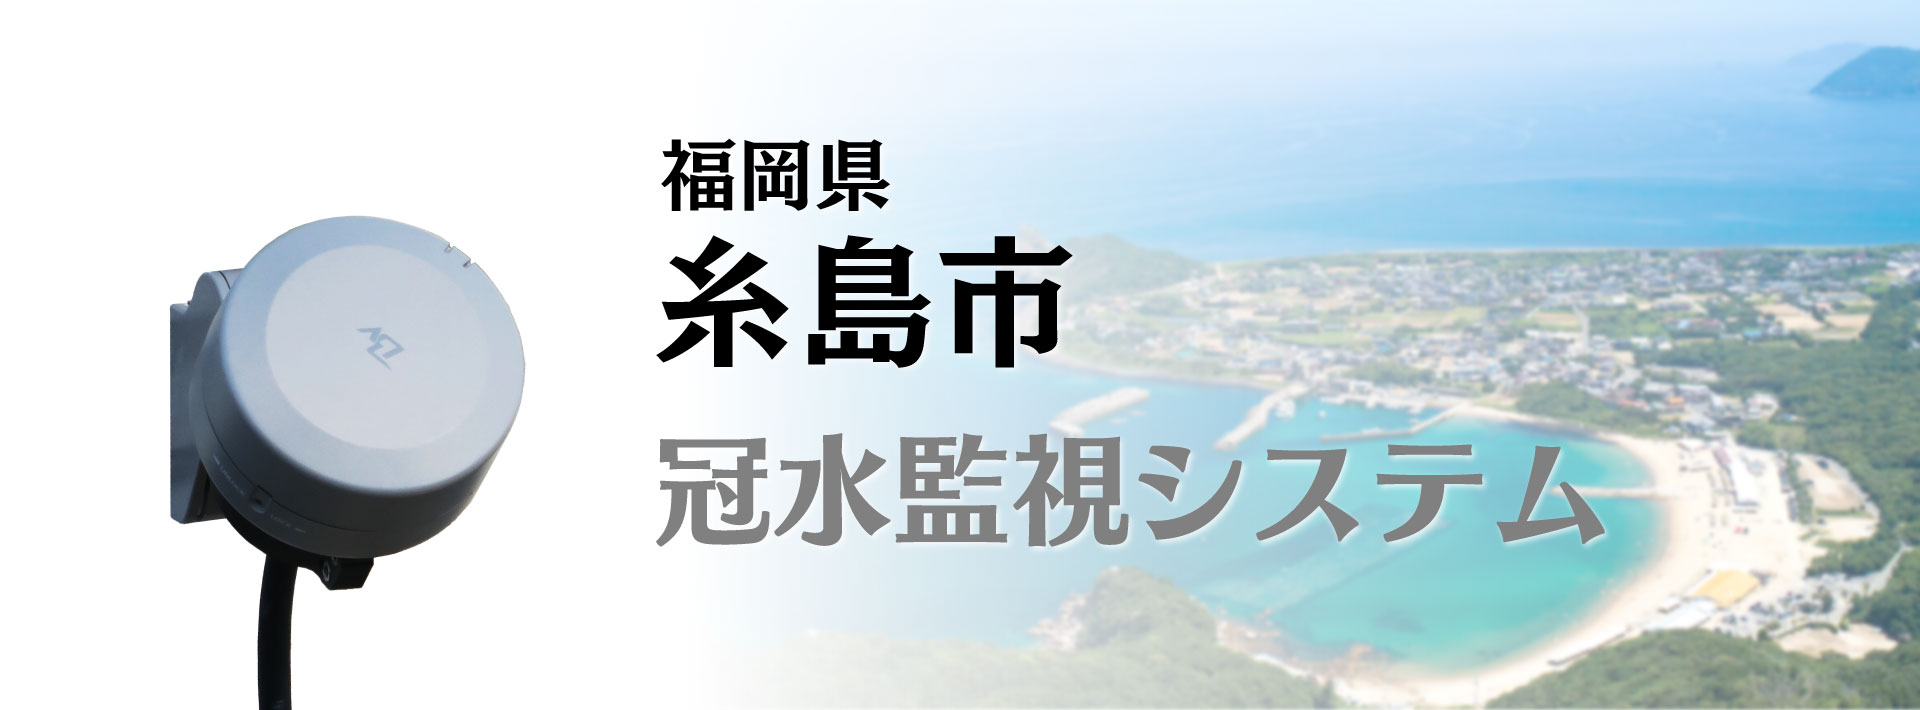 糸島市_冠水監視システムを導入